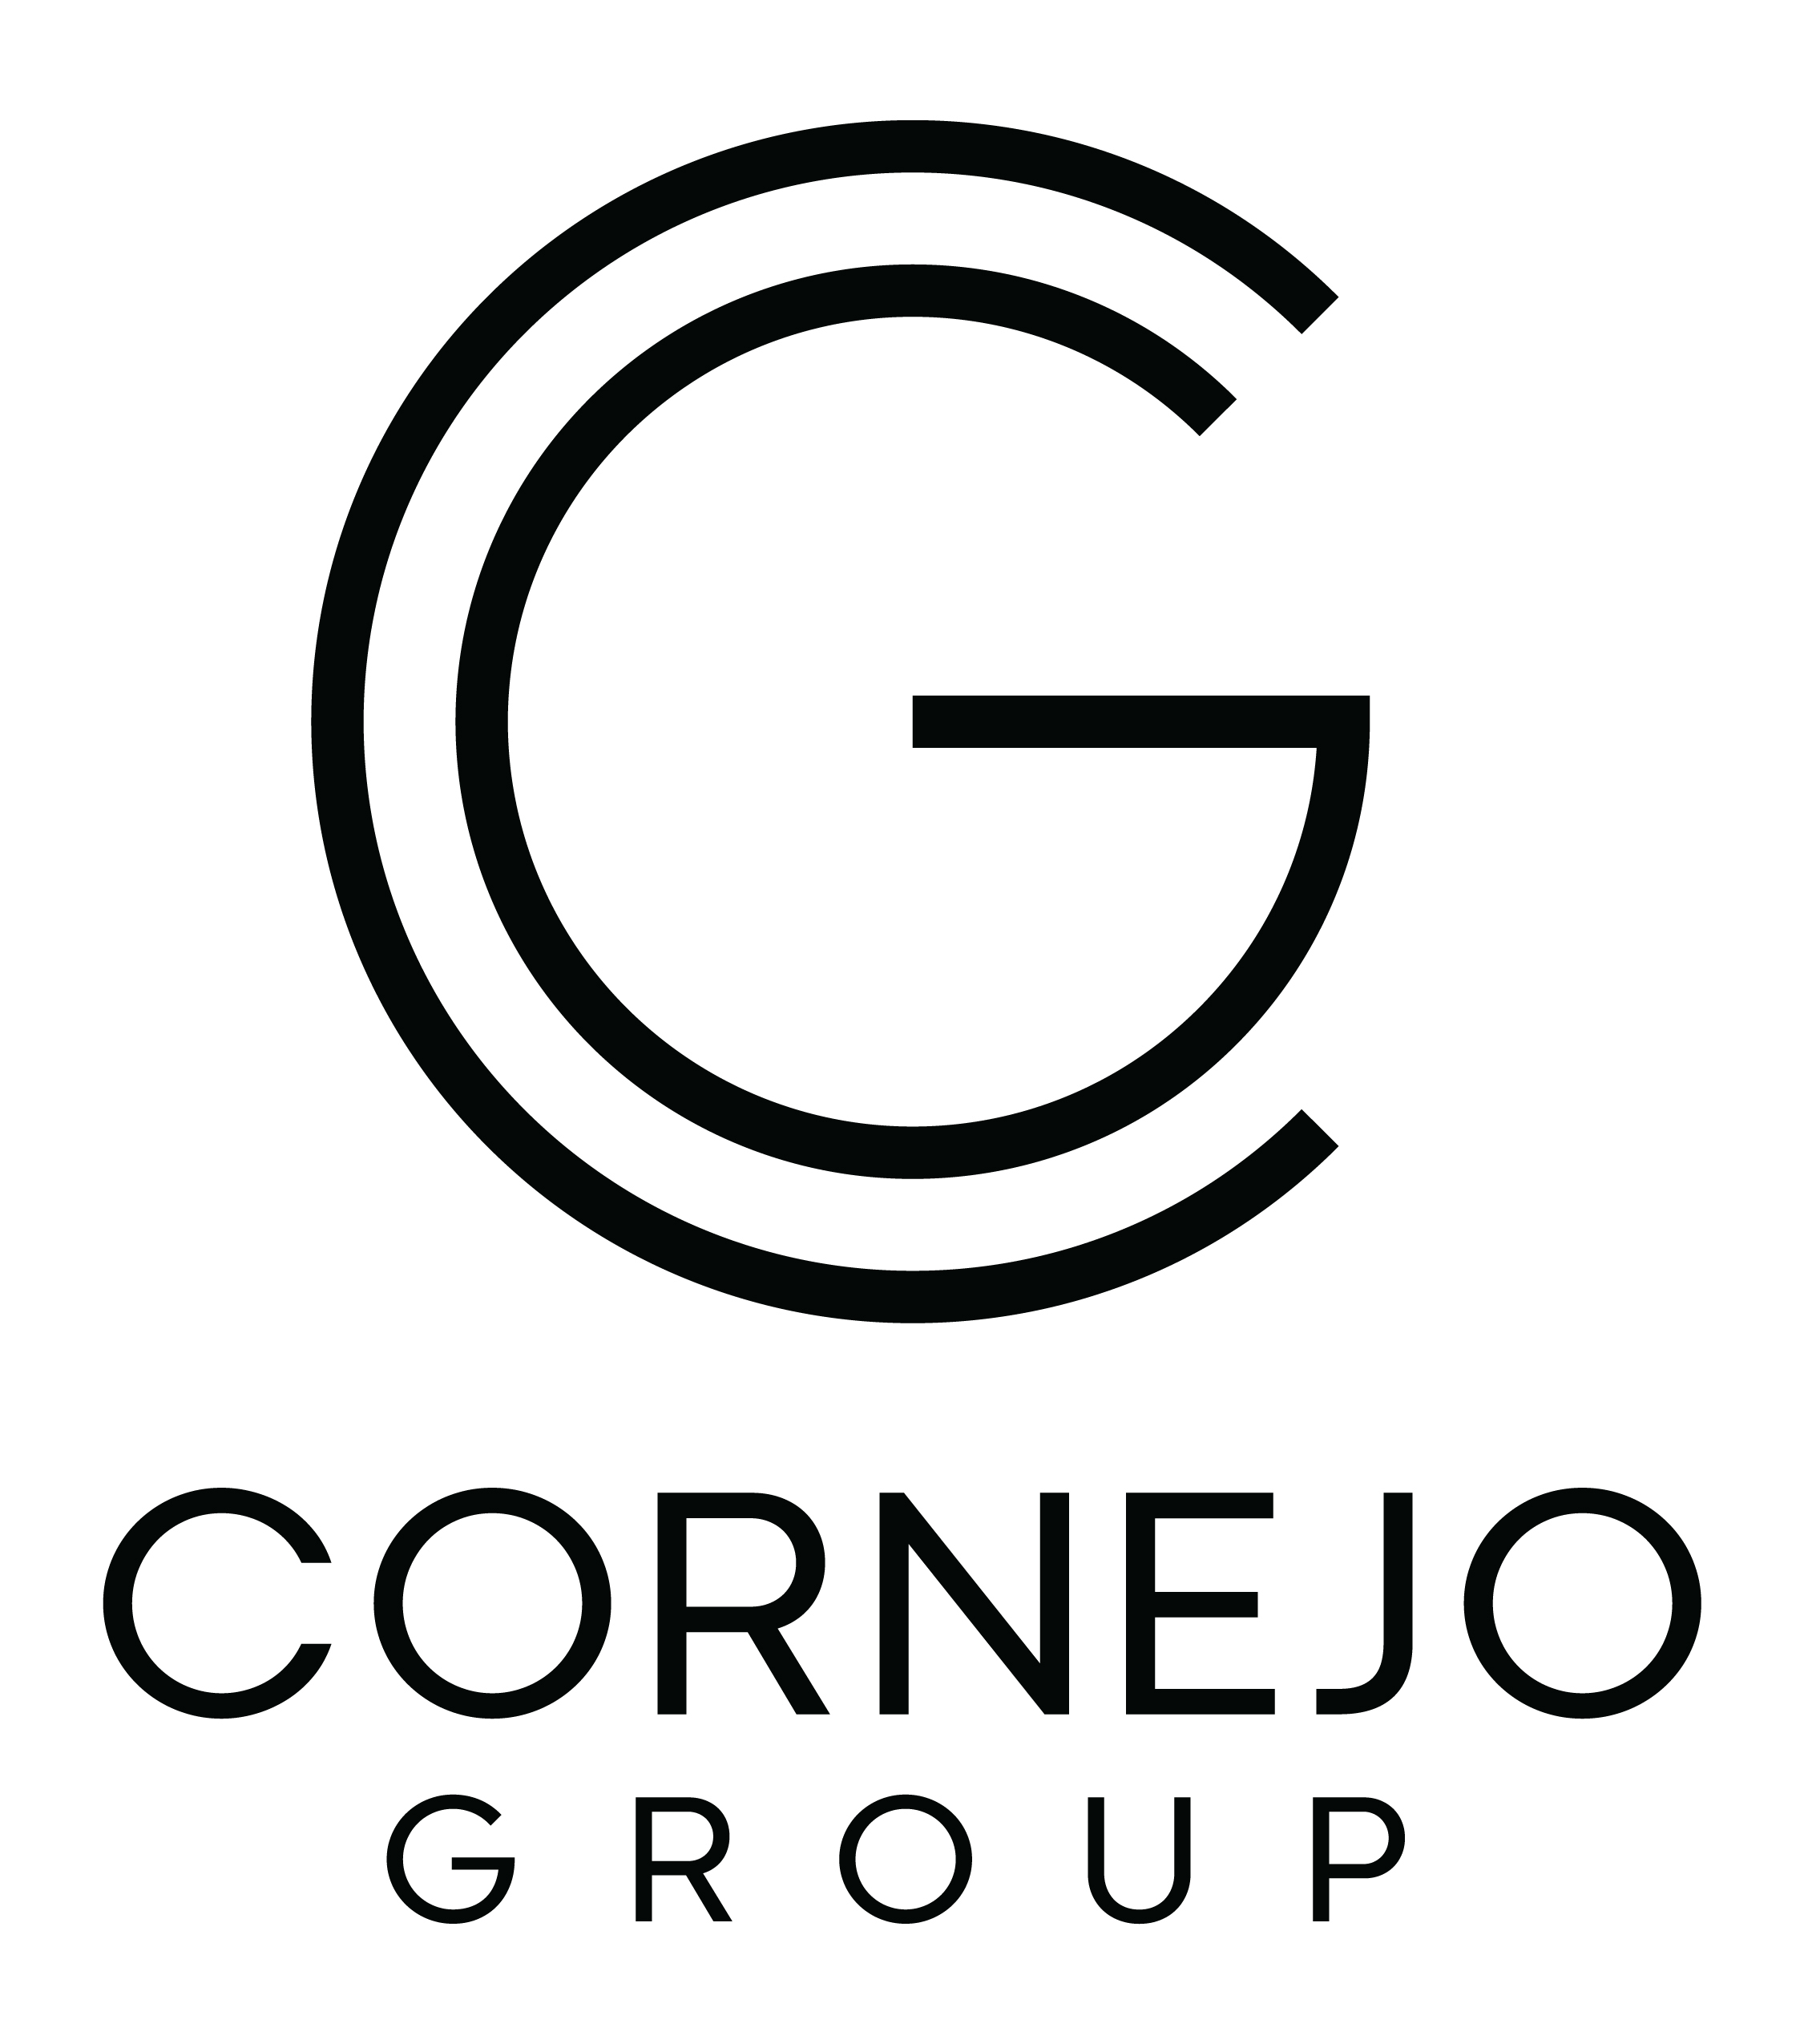 The Cornejo Group 